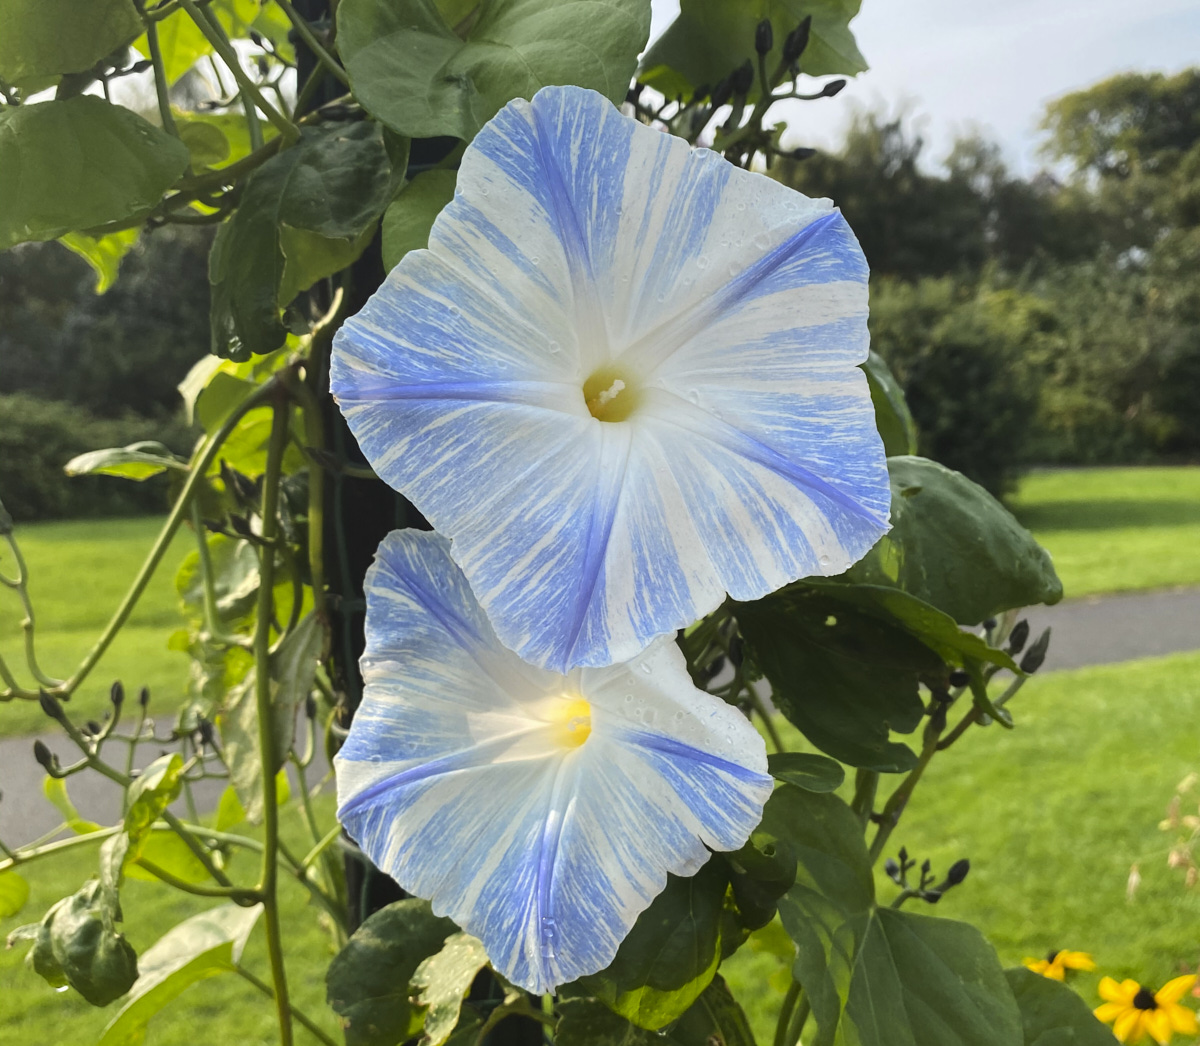 Morning Glory from Botanical Garden Dublin